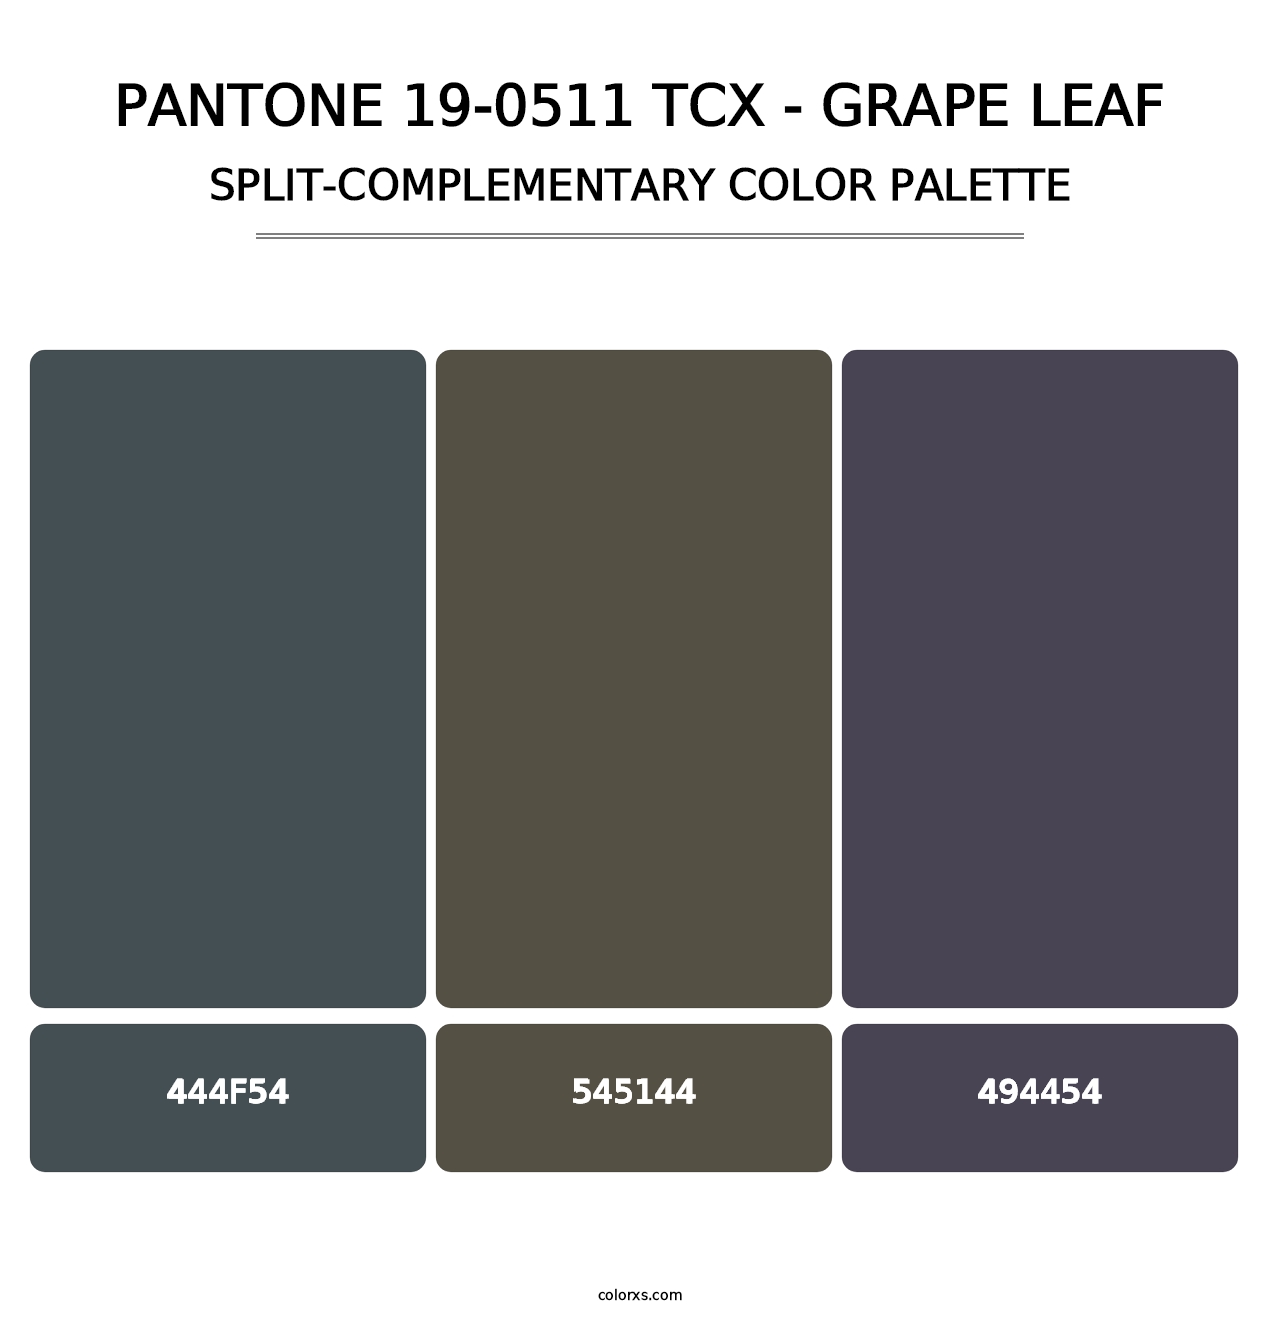 PANTONE 19-0511 TCX - Grape Leaf - Split-Complementary Color Palette